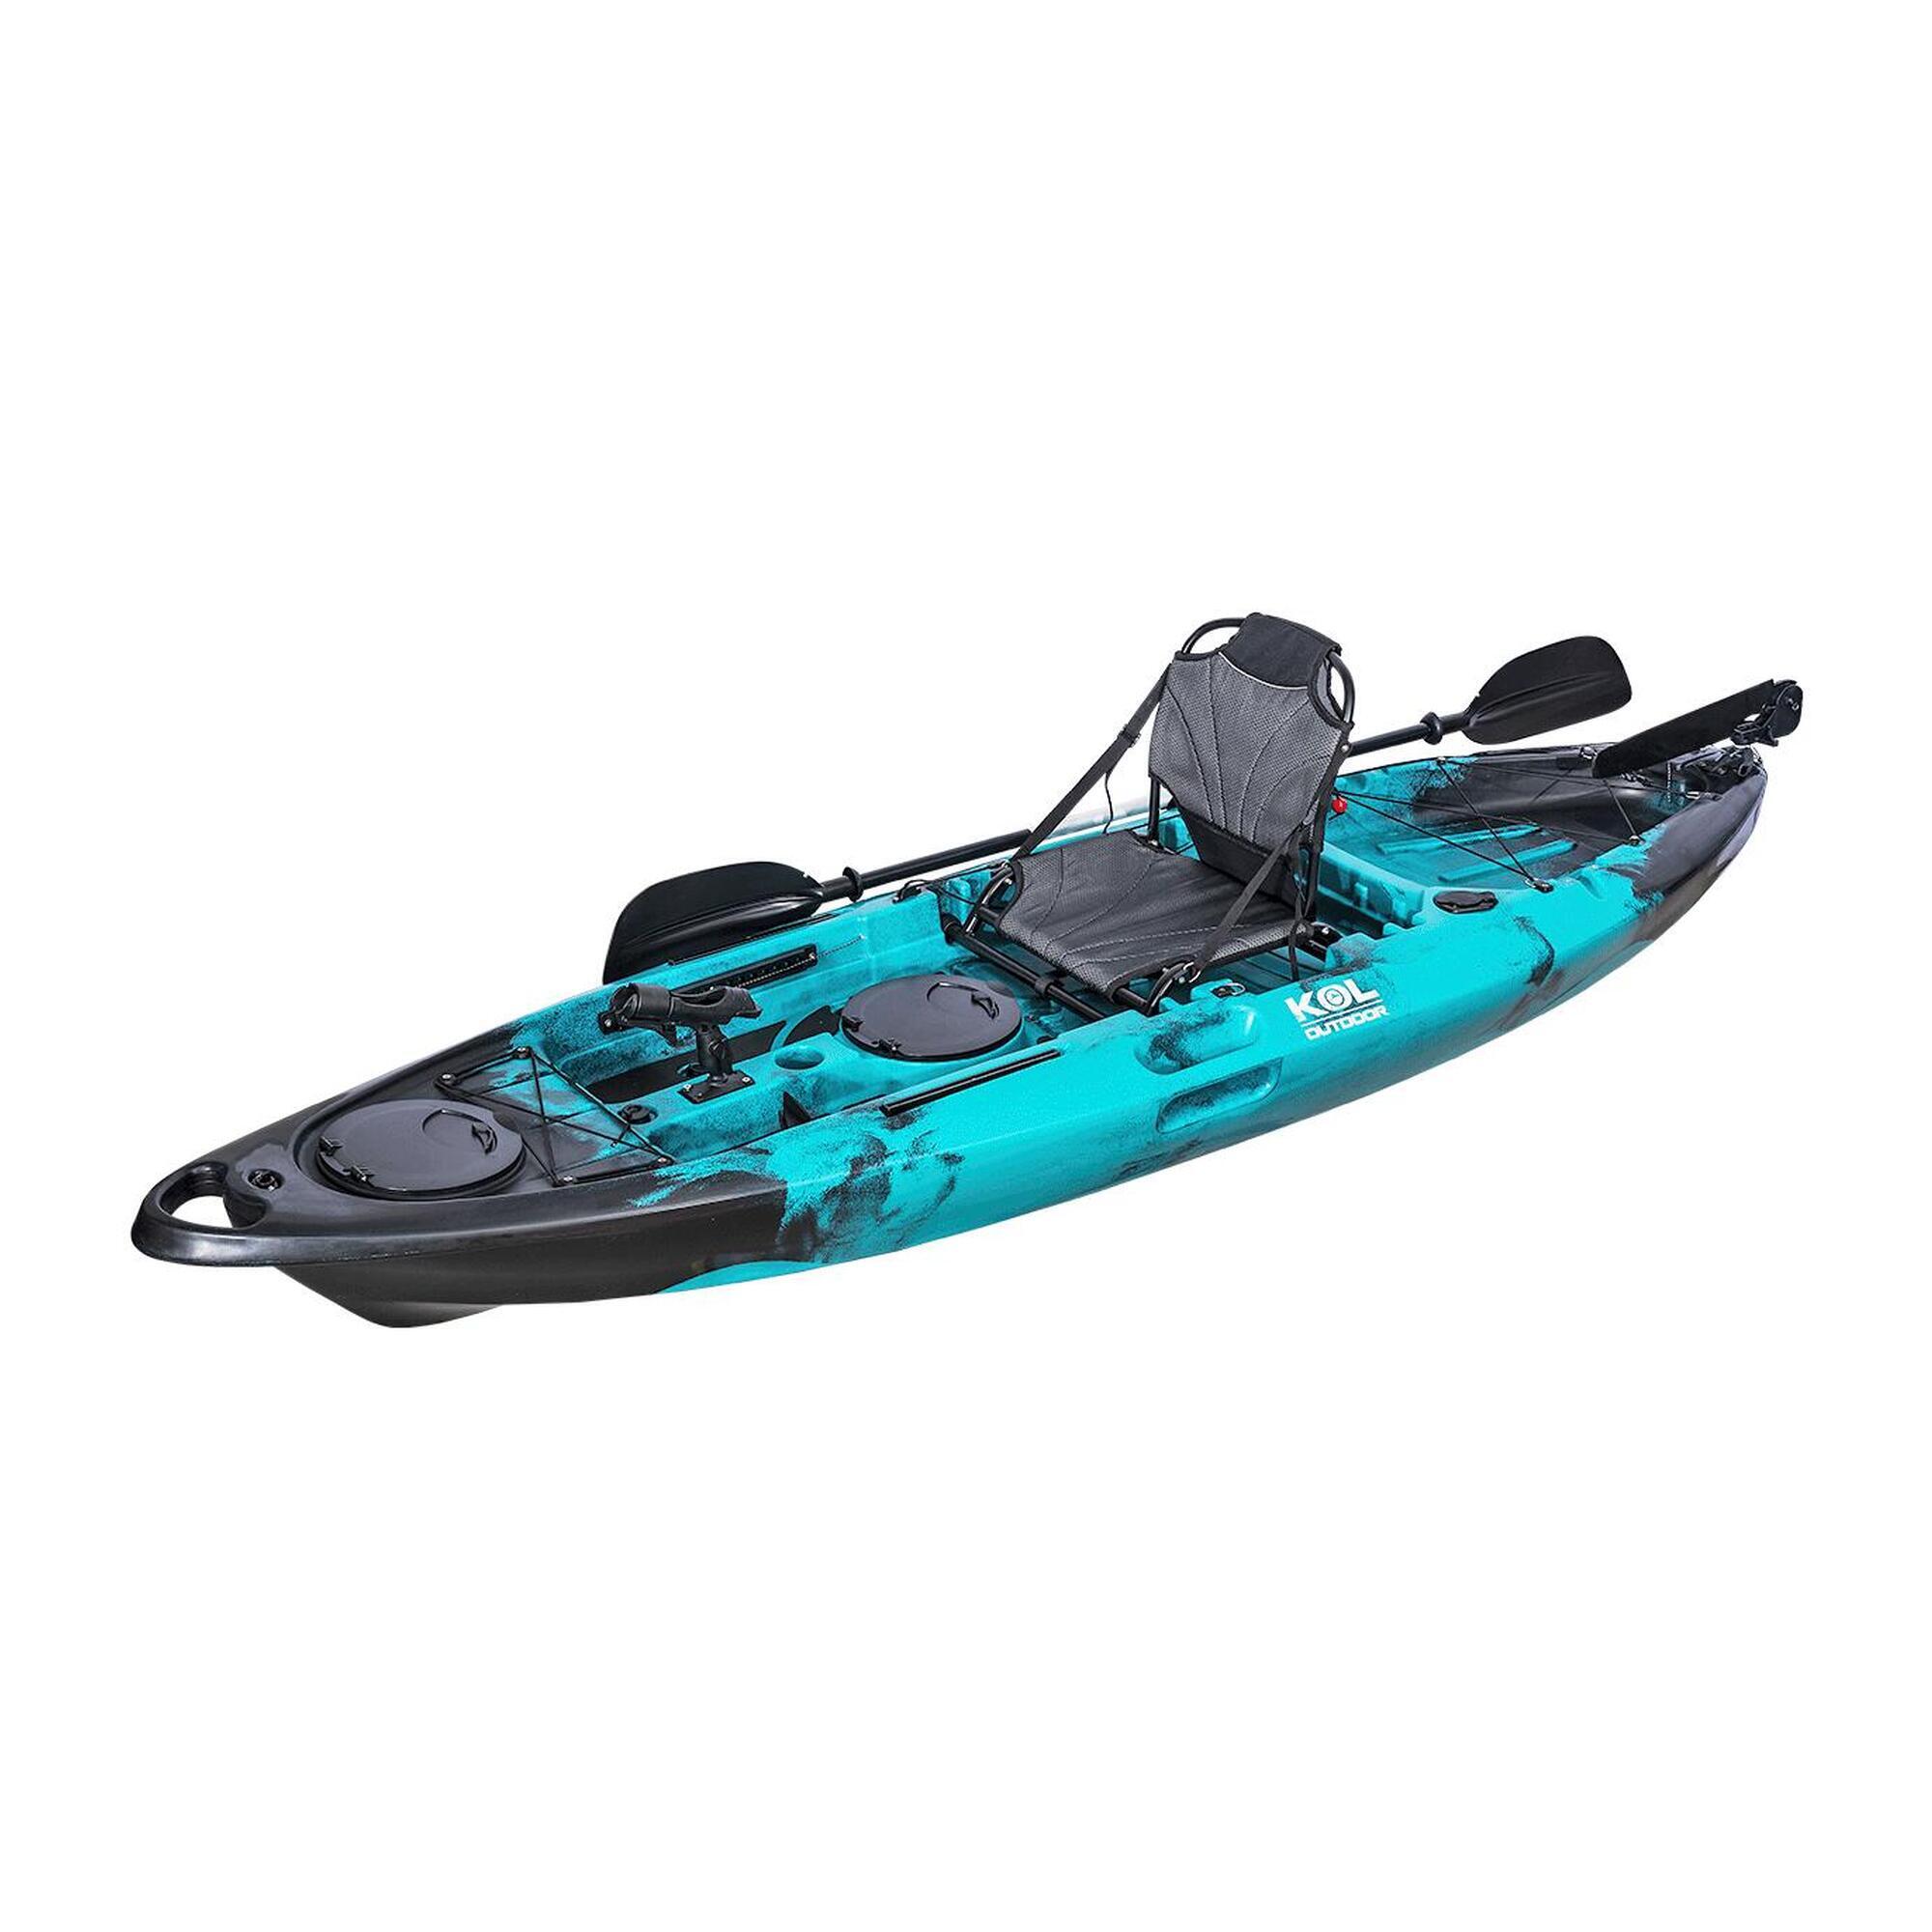 Kayak De Pesca Fury One Con Silla Aluminio Y Timón 310x85cm - azul-turquesa - 